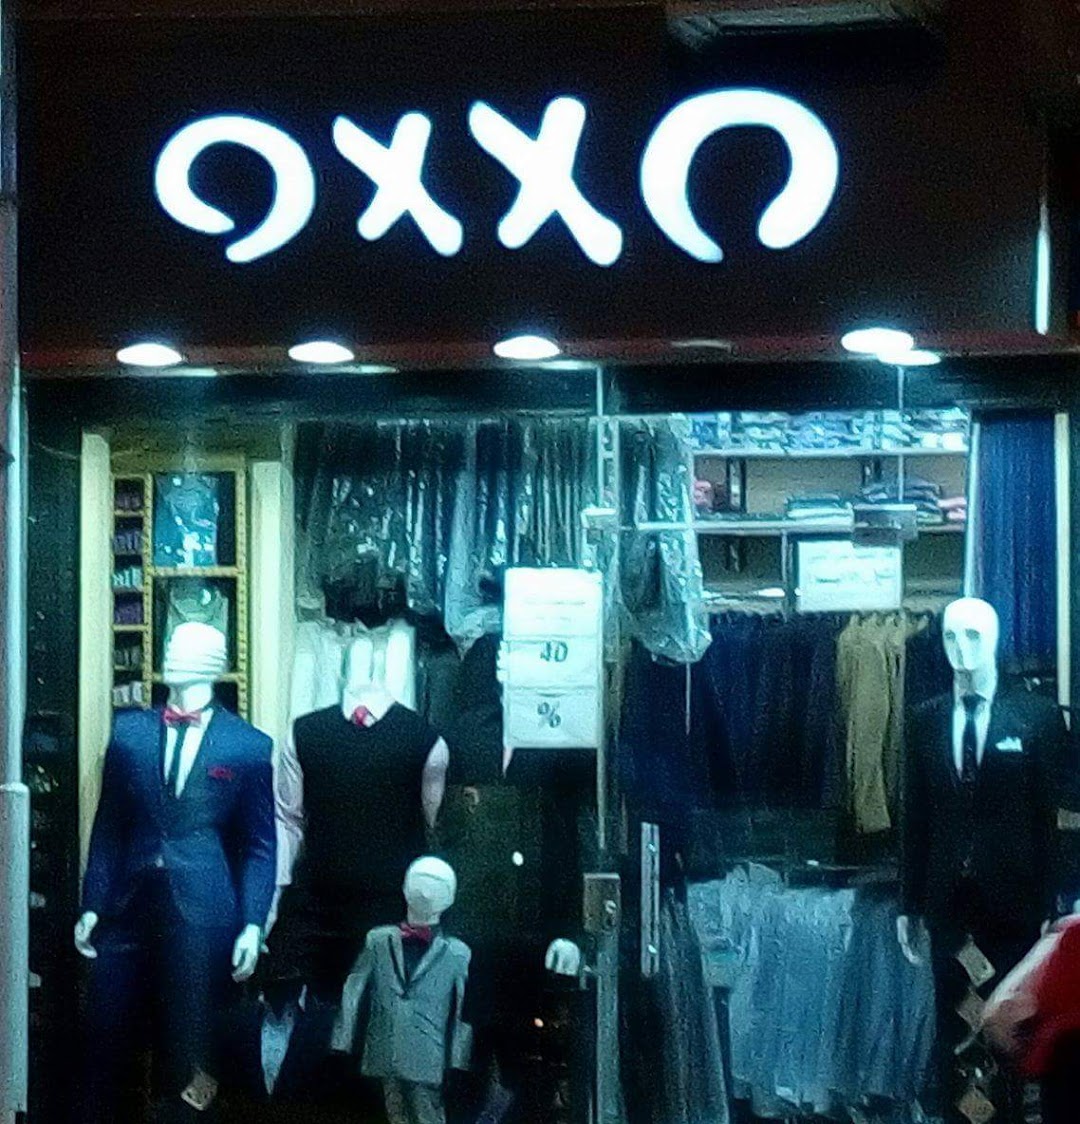 محل اوكسو للبدل الرجالى OXXO